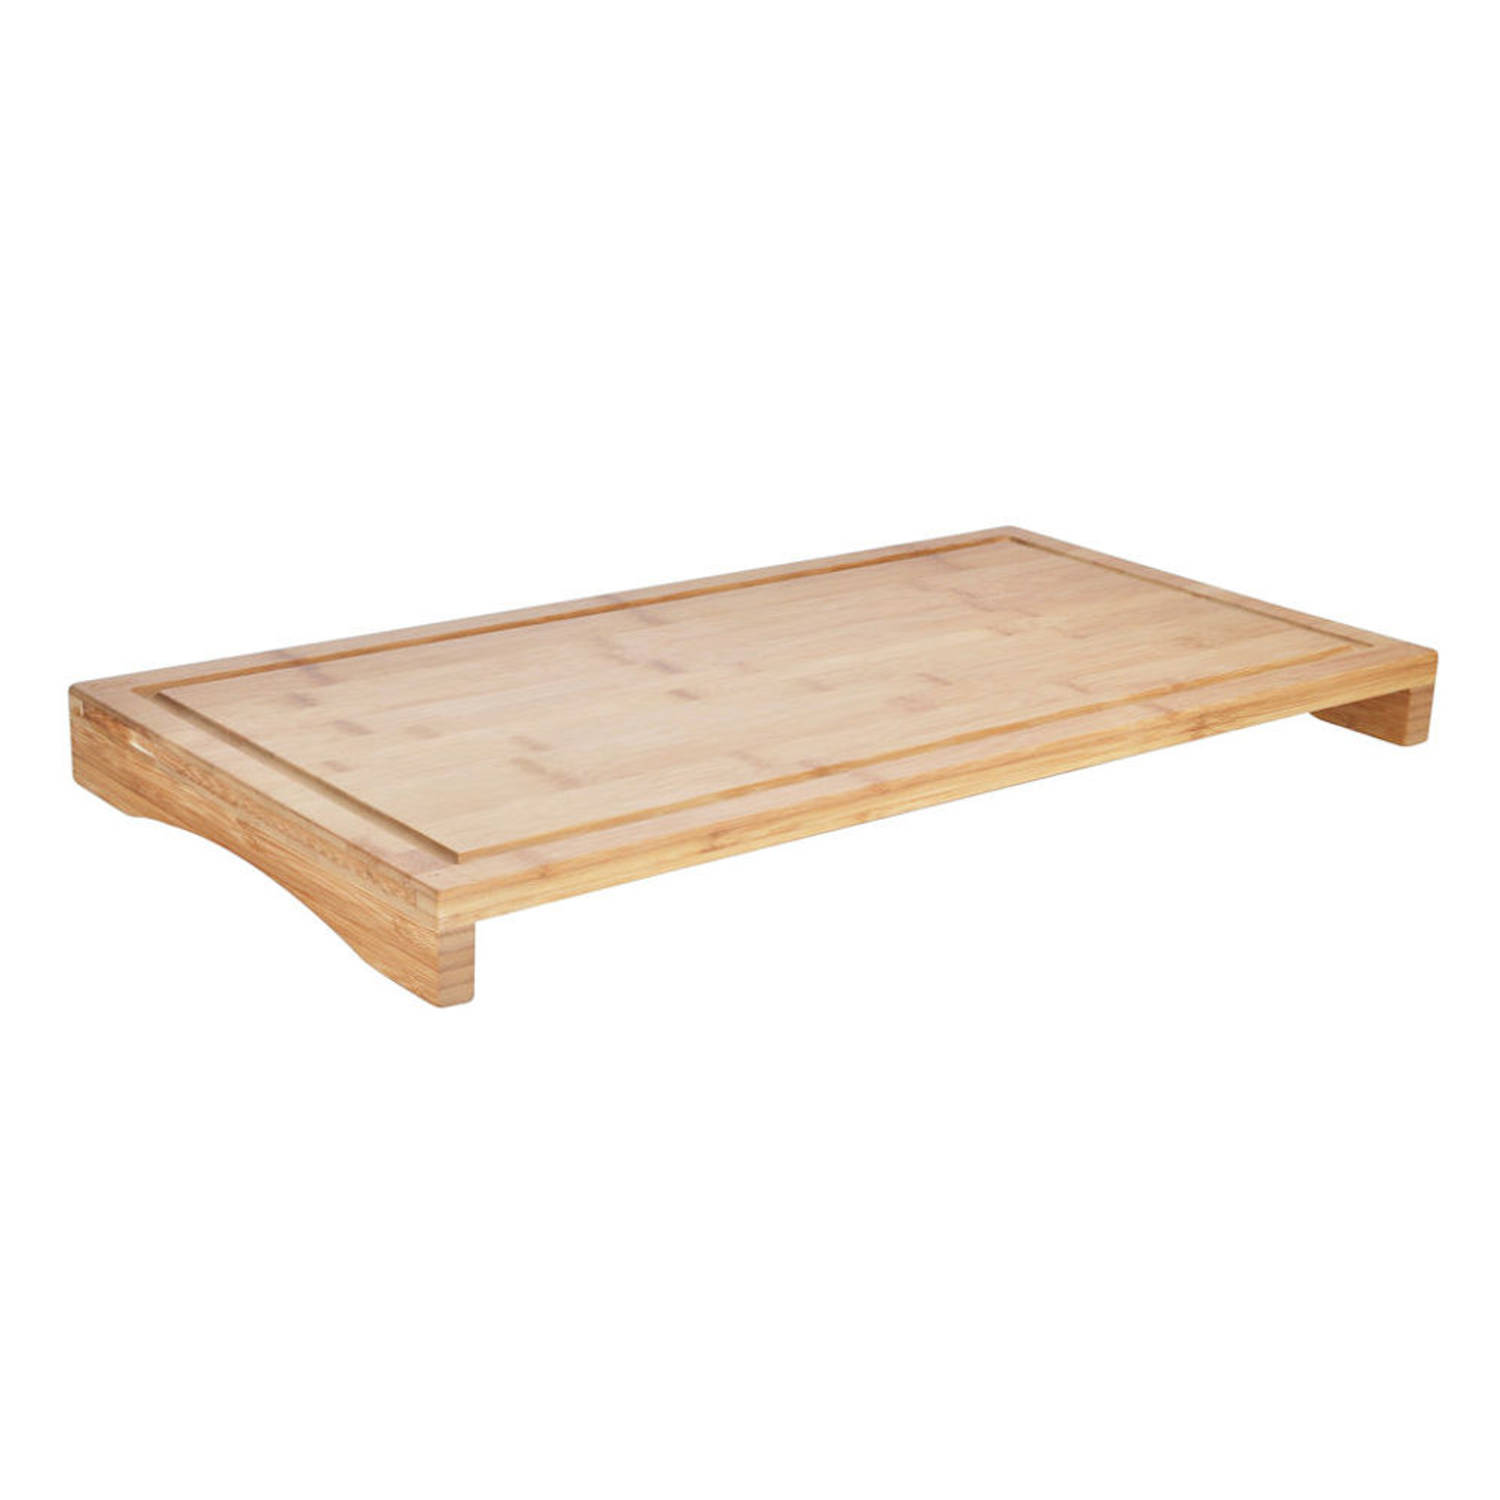 kwaadheid de vrije loop geven Dek de tafel onze Decopatent® Snijplank - Kookplaat Afdekplaat - Bamboe hout - Houten |  Blokker